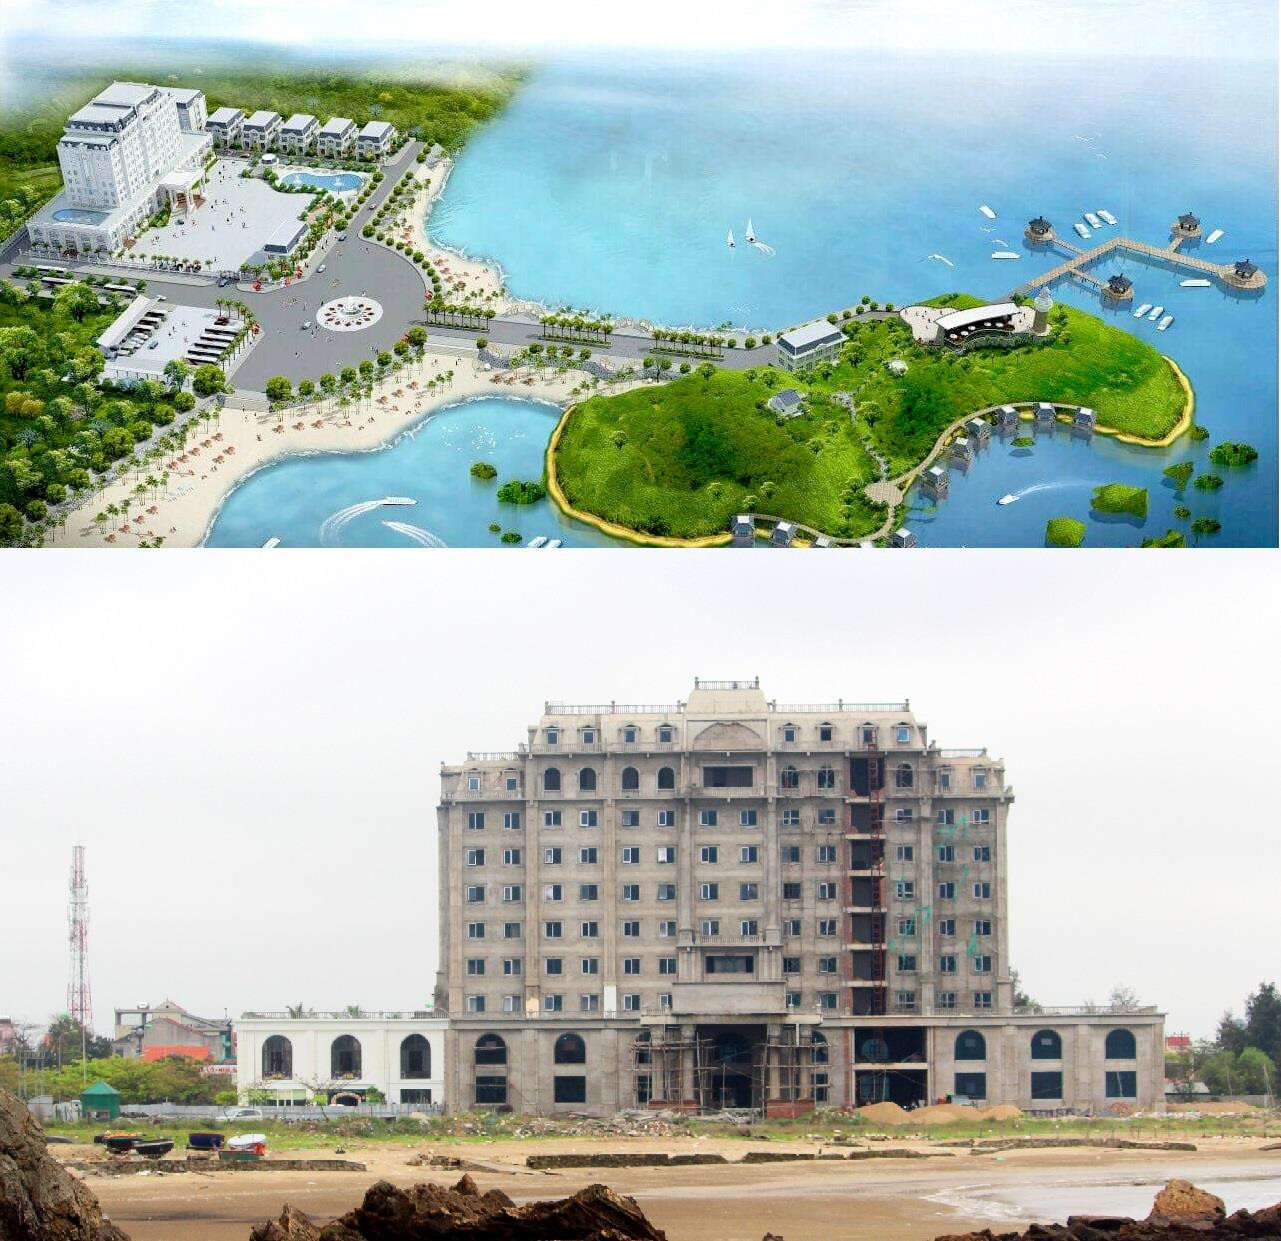 Quản thể Dự án du lịch đảo Lan Châu (Cửa Lò) và khách sạn 5 sao đang hoàn thiện. Ảnh: Nguyên Nguyên